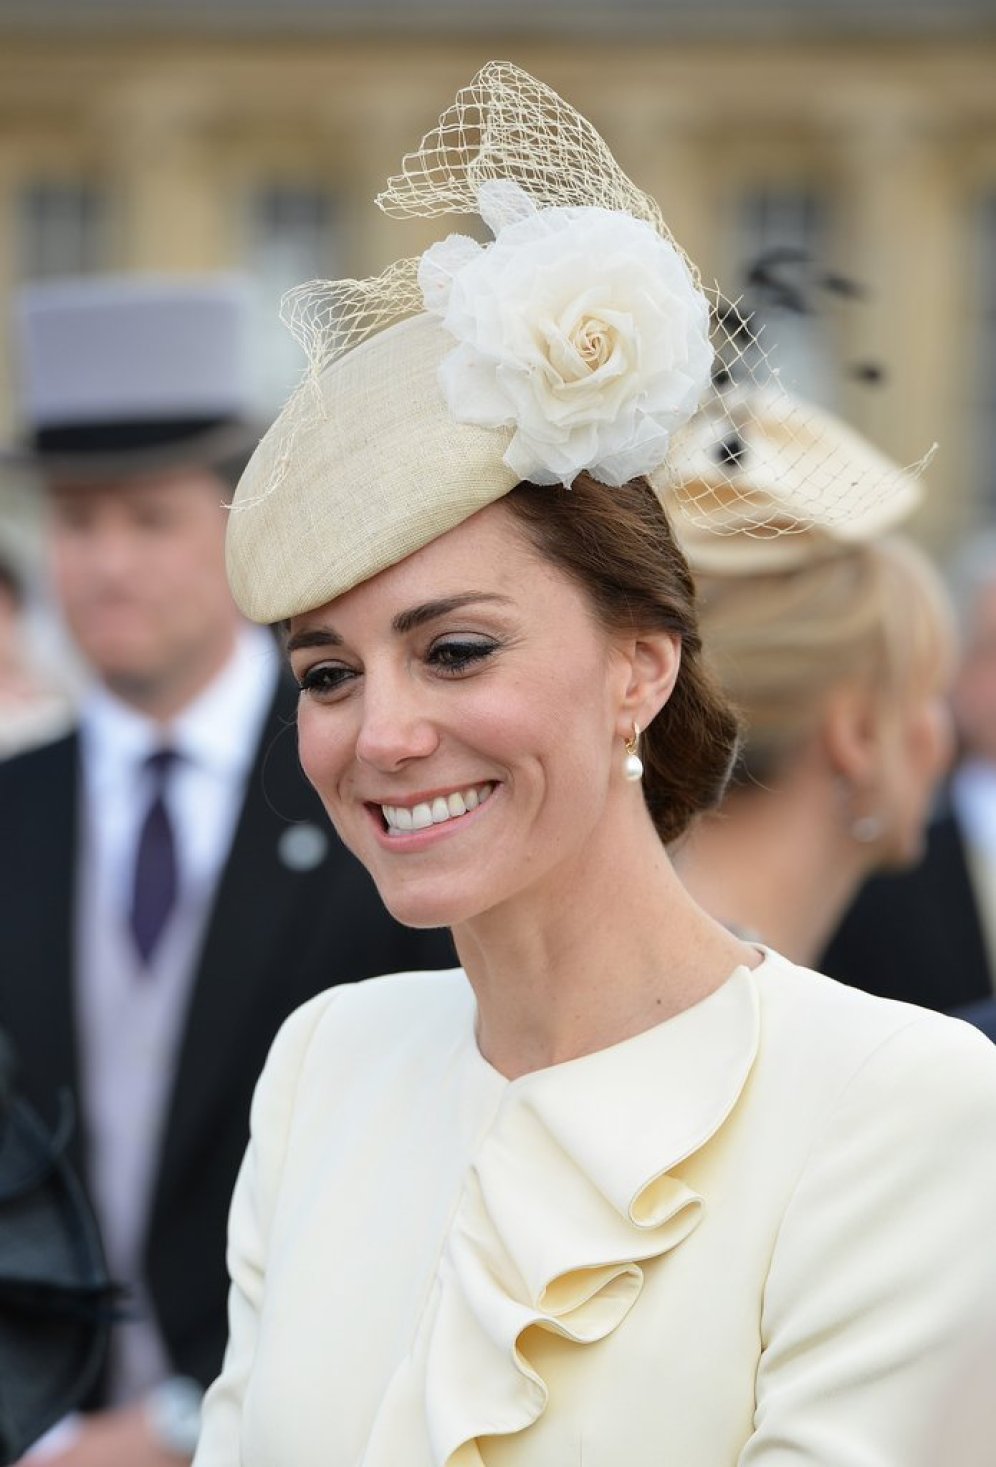 24 maggio 2016. Kate ha indossato anche lo stesso cappello di Jane Taylor, con un grande fiore e veletta, dello stesso color crema del resto dell'outfit. Diversamente dal Battesimo di George, aveva i capelli raccolti.